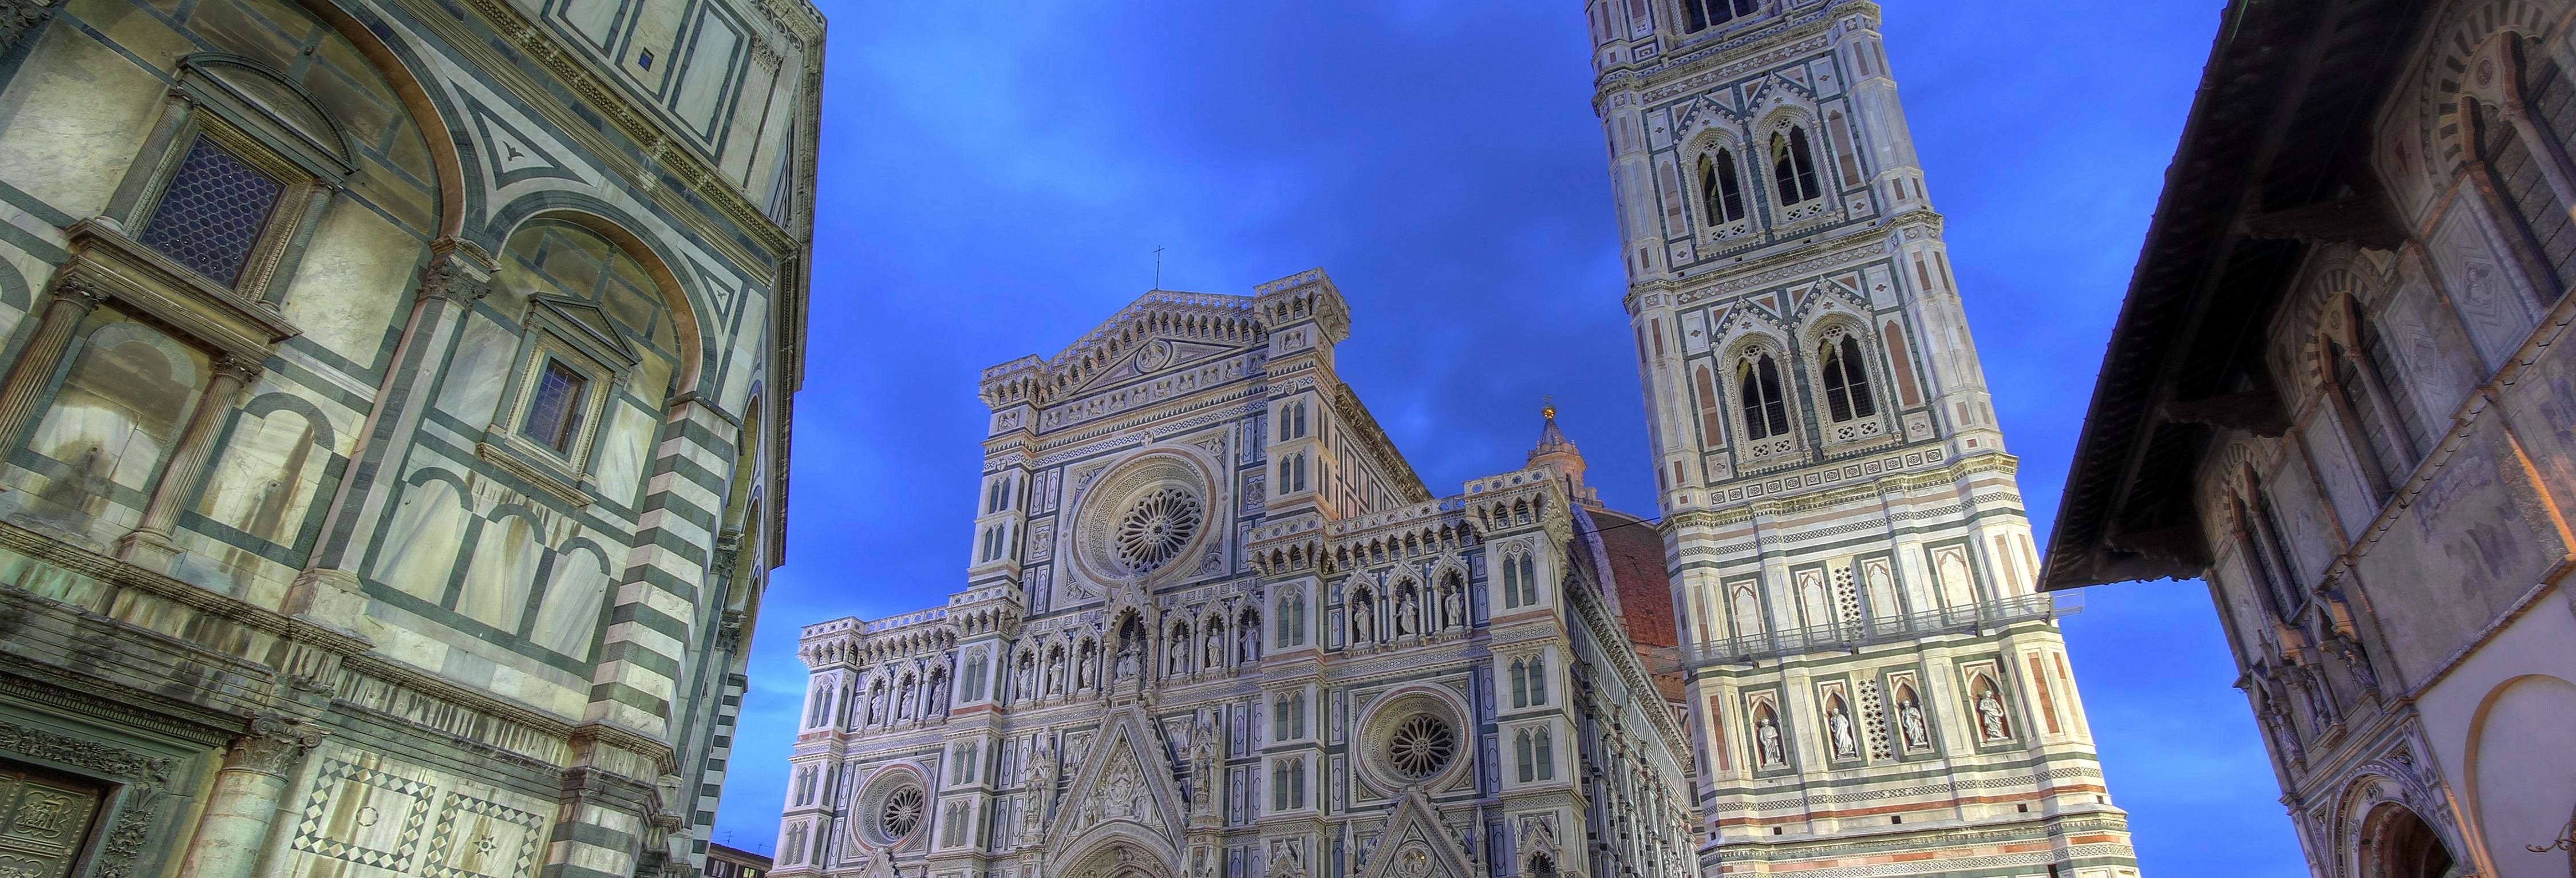 Tour de mistérios e lendas por Florença